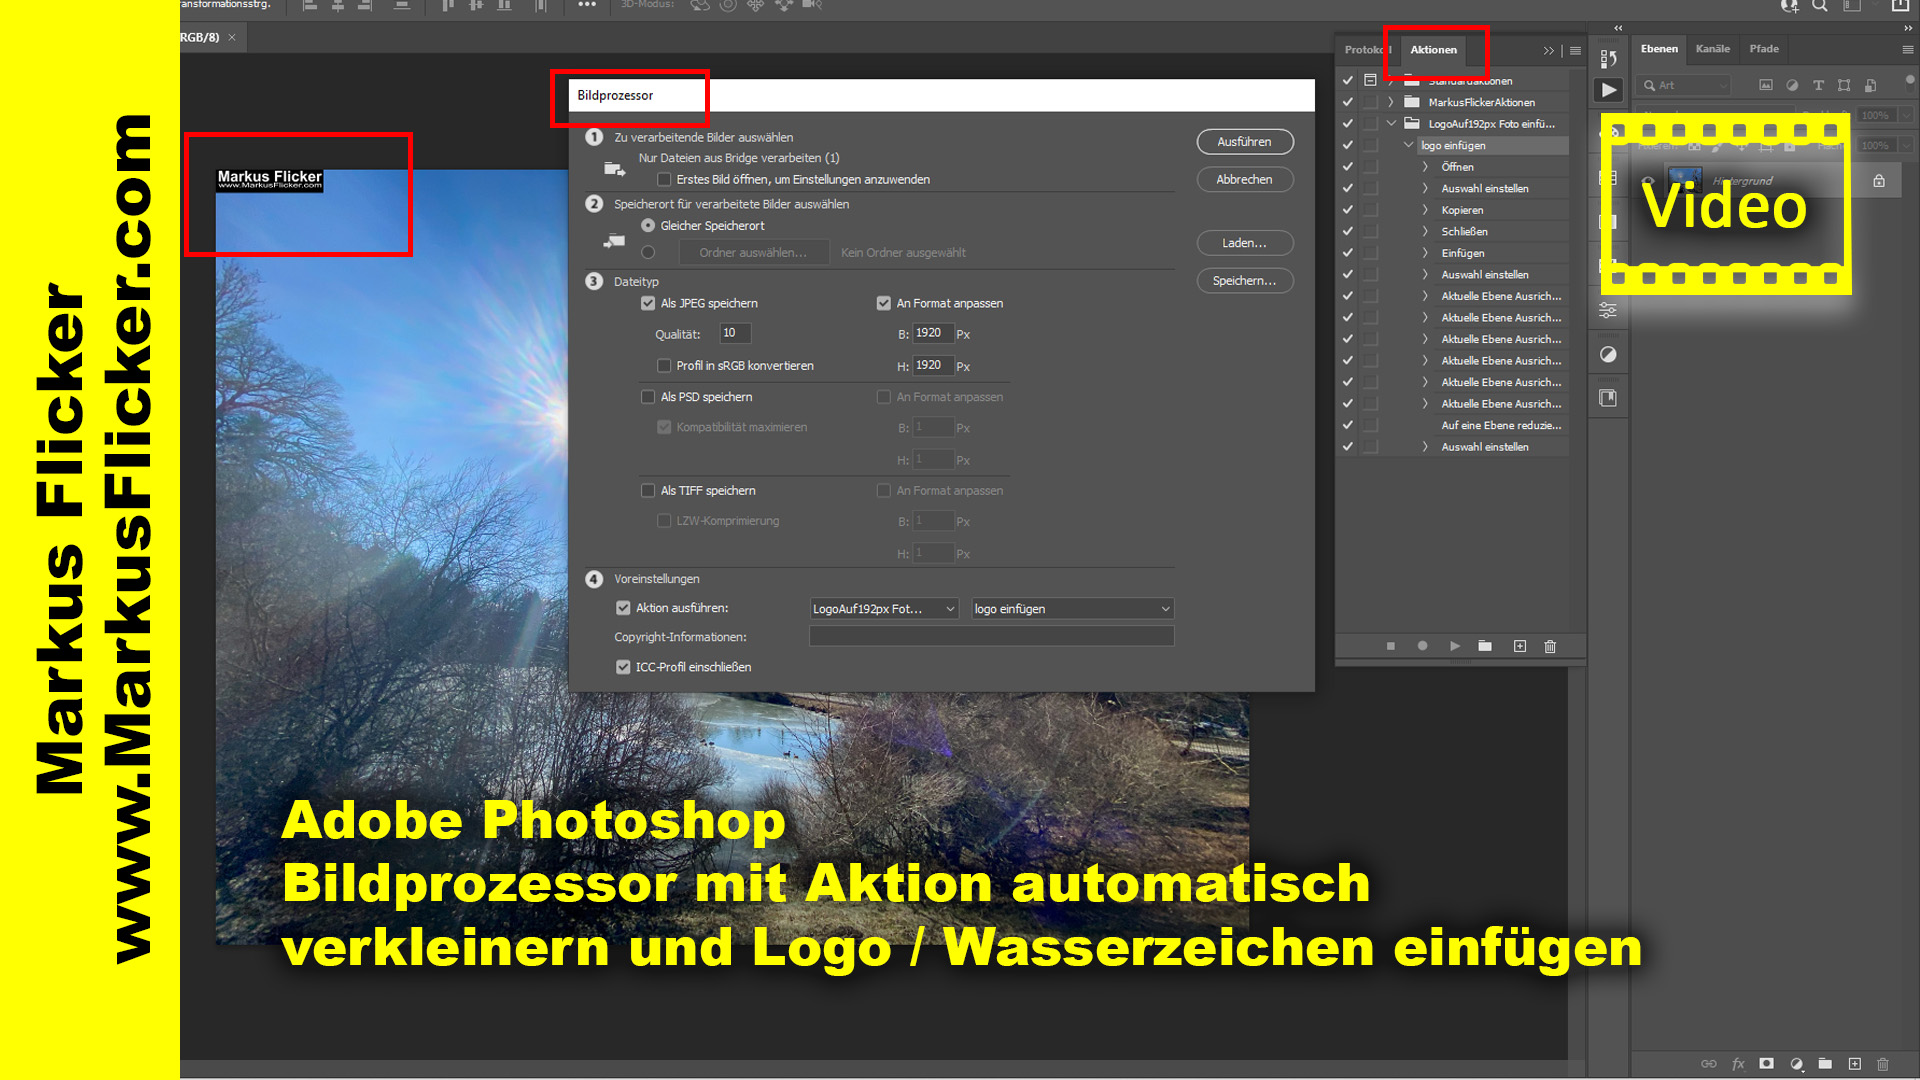 Adobe Photoshop Bildprozessor mit Aktion automatisch verkleinern und Logo einfügen